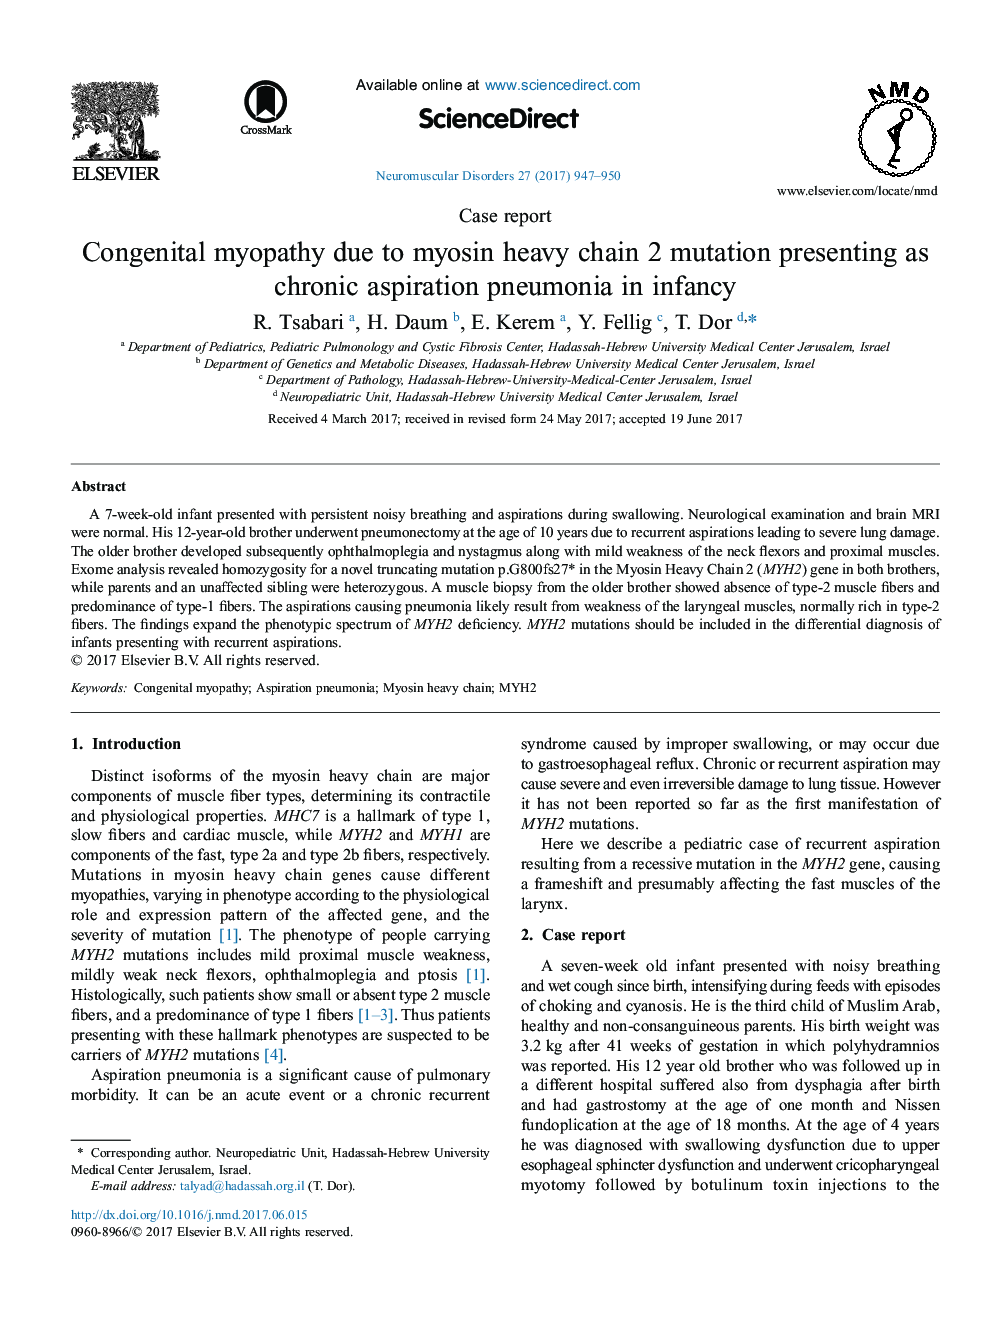 گزارش موردی میوپاتی کنگنیتال به علت جهش زنجیره سنگین میوزین 2 که به عنوان پنومونی آسپیراسیون مزمن در دوران کودکی 